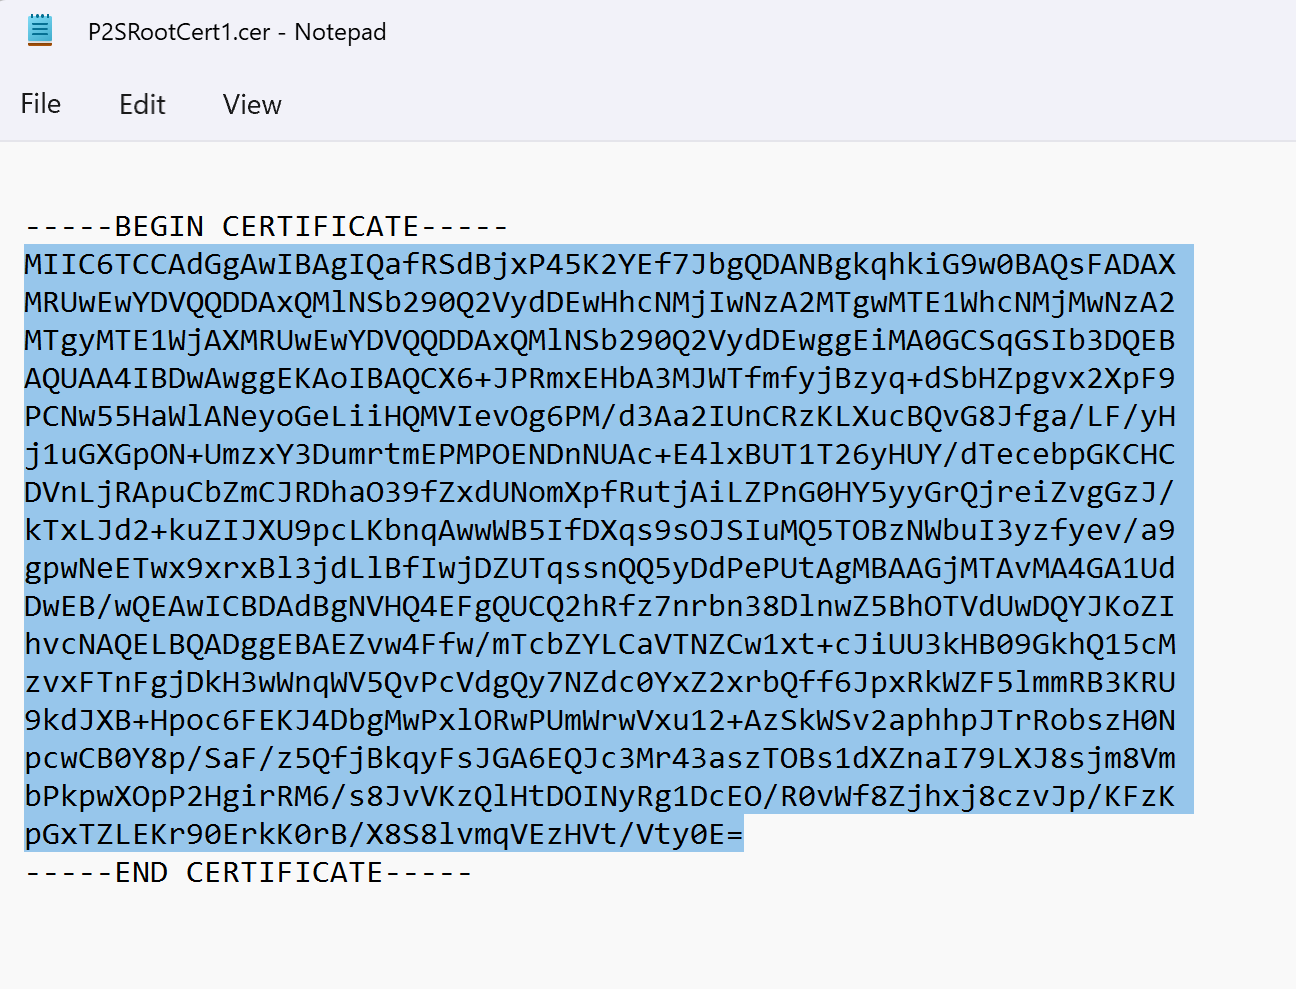 Capture d’écran montrant le fichier CER ouvert dans le Bloc-notes avec les données du certificat mises en évidence.